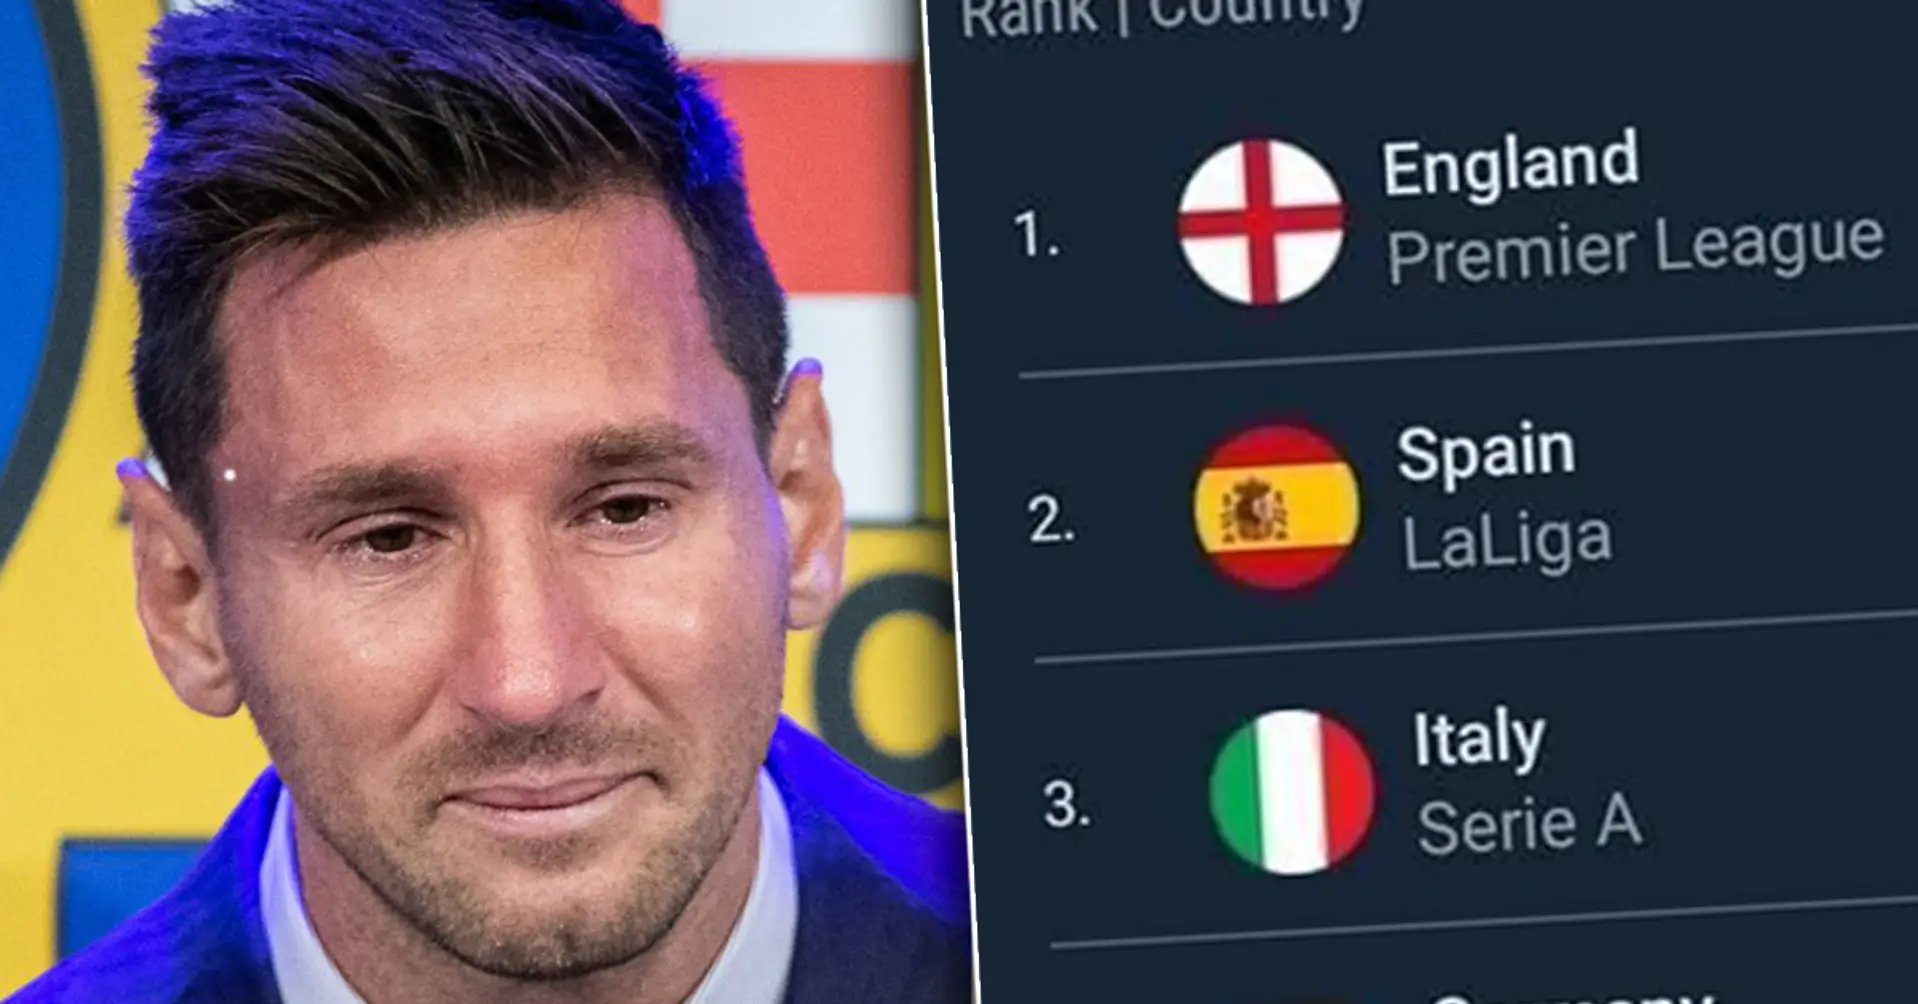 Mauvaise nouvelle pour Leo Messi: le nouveau classement de l'UEFA a été publié